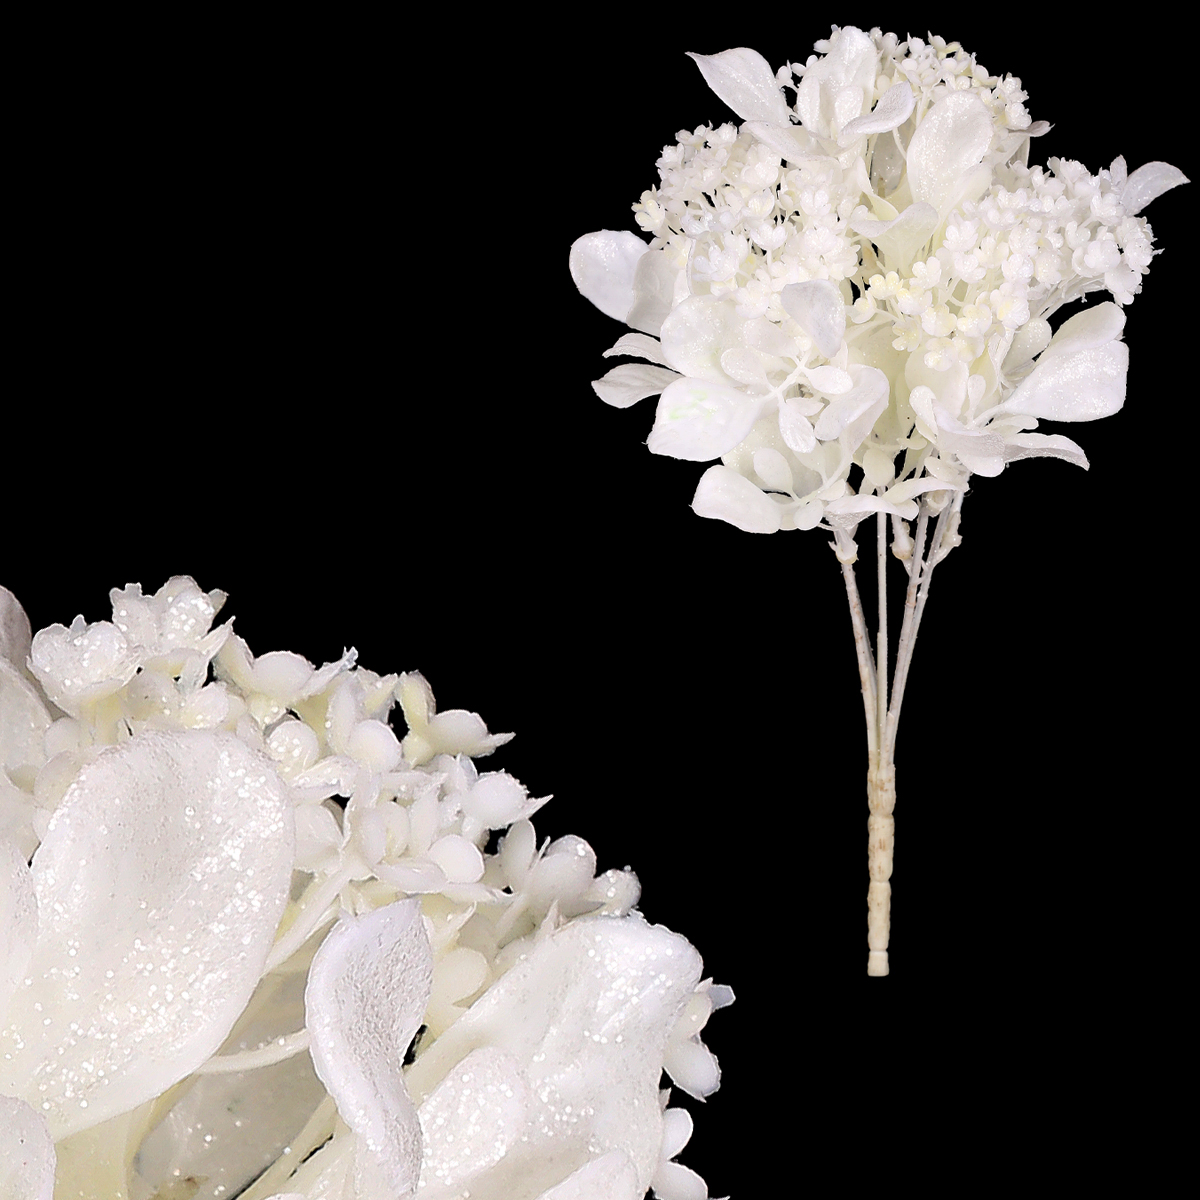 Kytice kvetoucí, barva bílá s glitry.